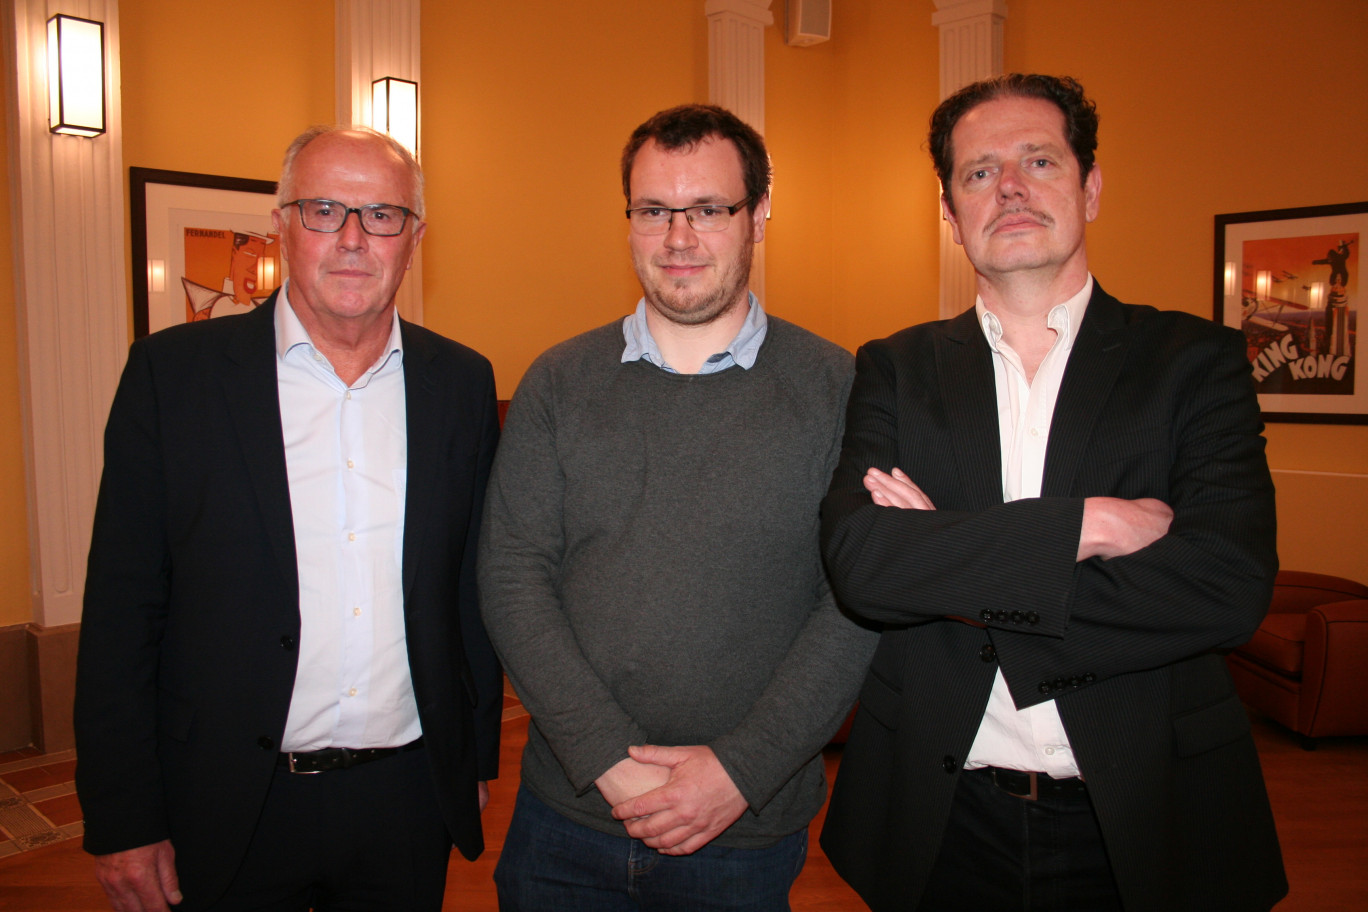 De gauche à droite, Henri Breban, président d’Express packaging, Florent Empis, directeur technique et recherche de Nuukik, et Olivier Lefevre, co-fondateur de Dad.